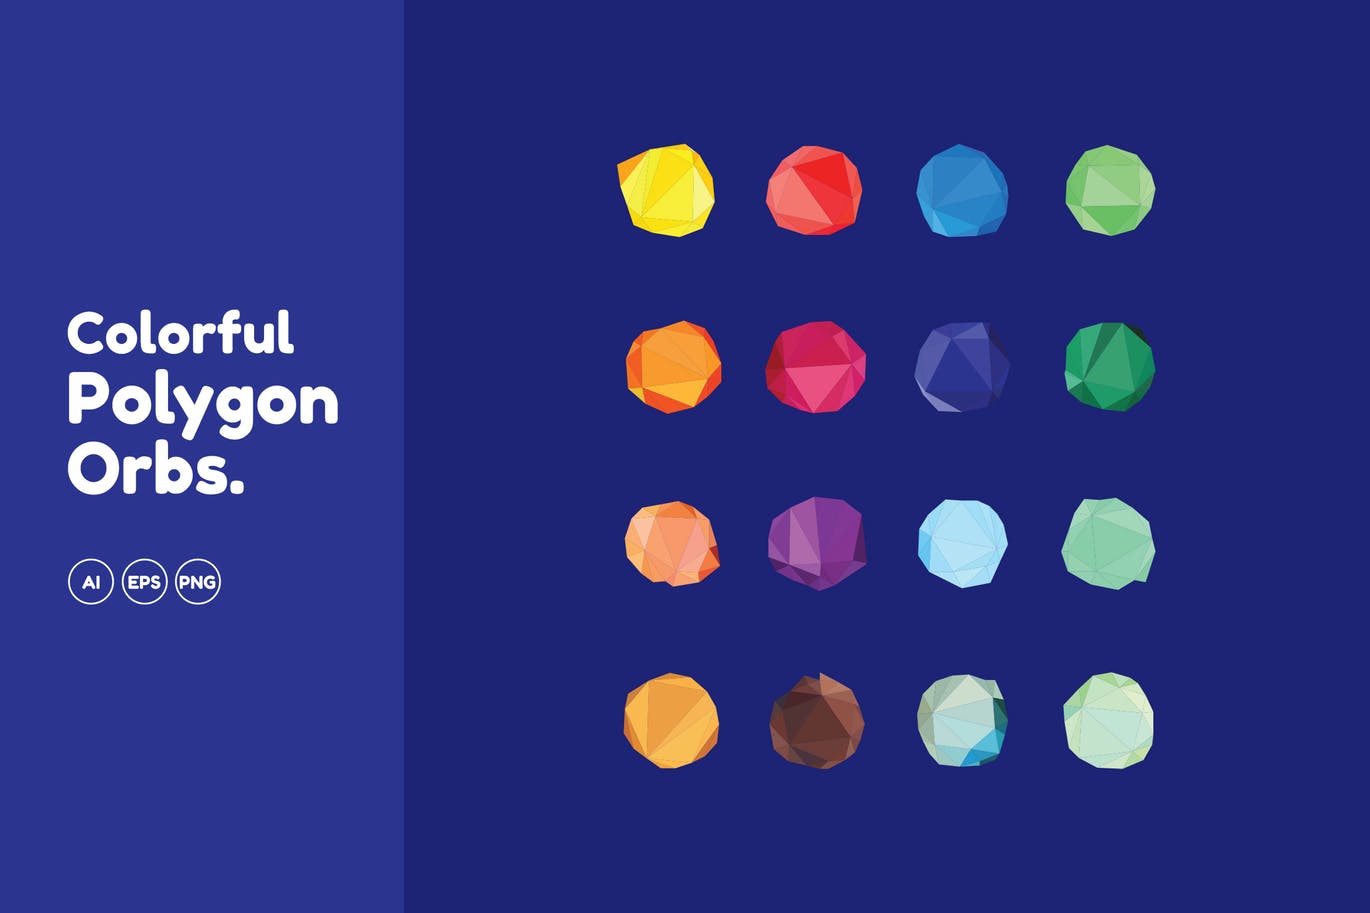 彩色多边形球体矢量图形素材 Colorful Polygon Orbs插图